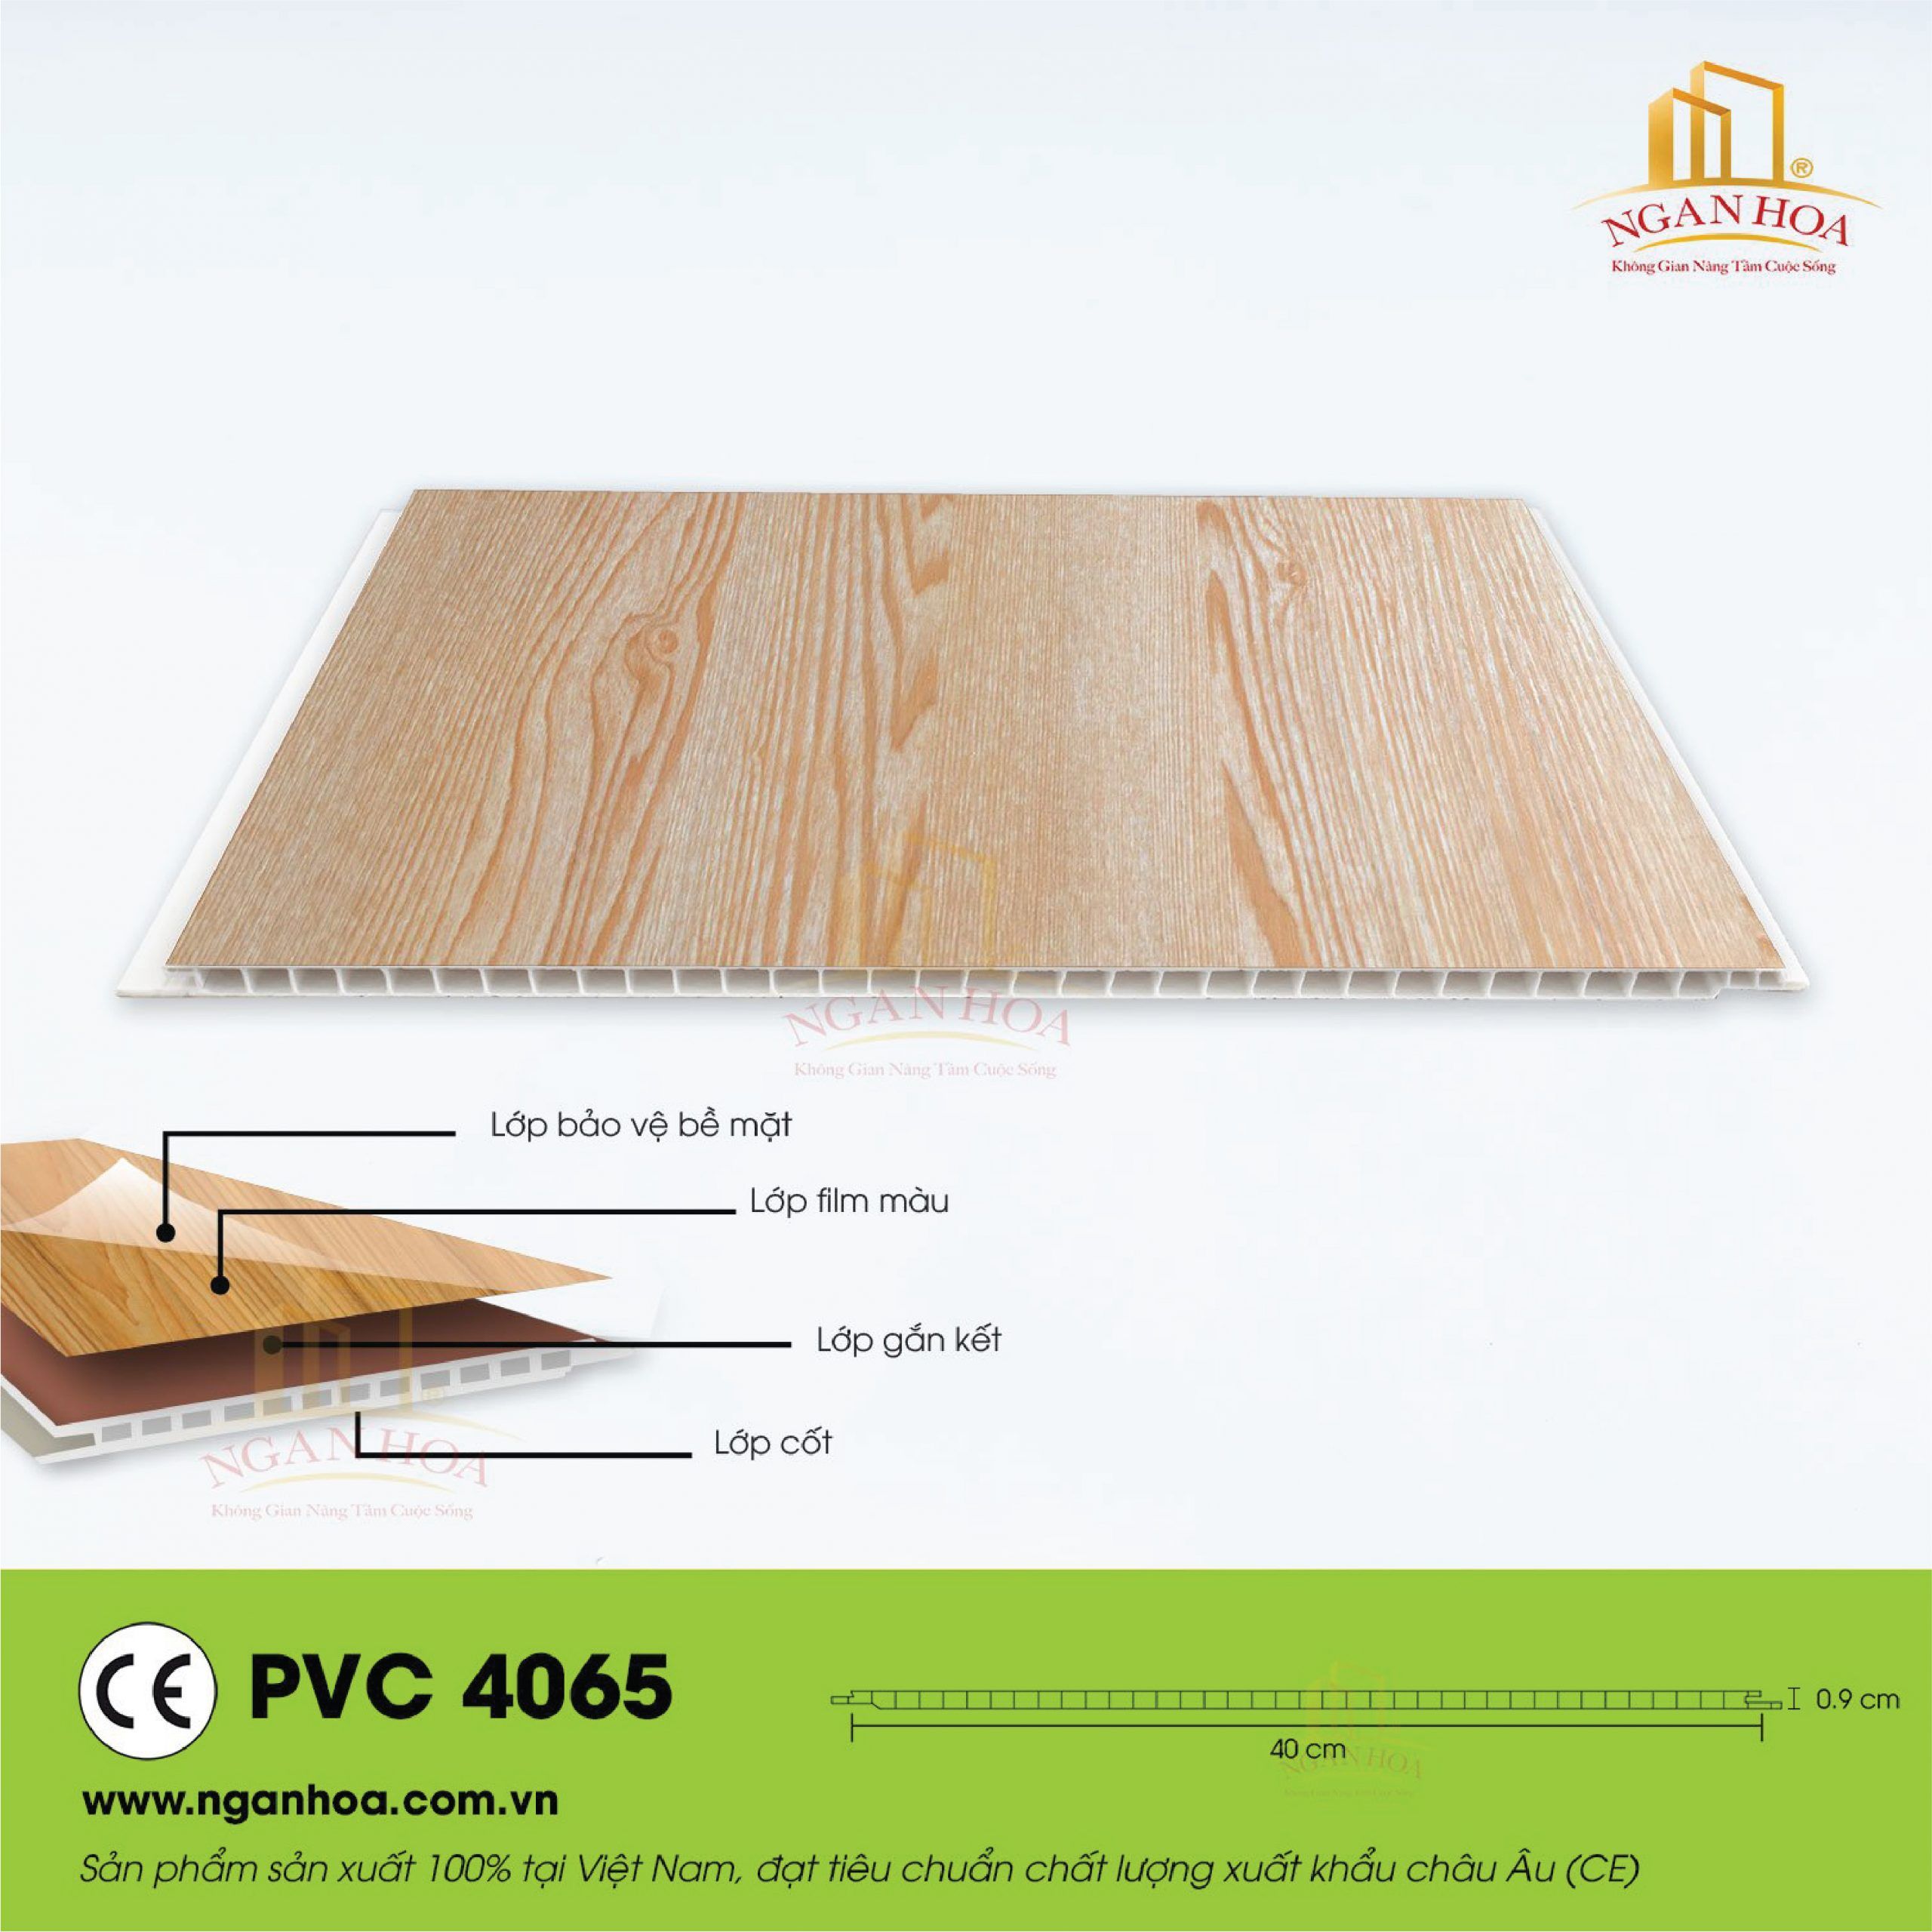 PVC 4065 scaled